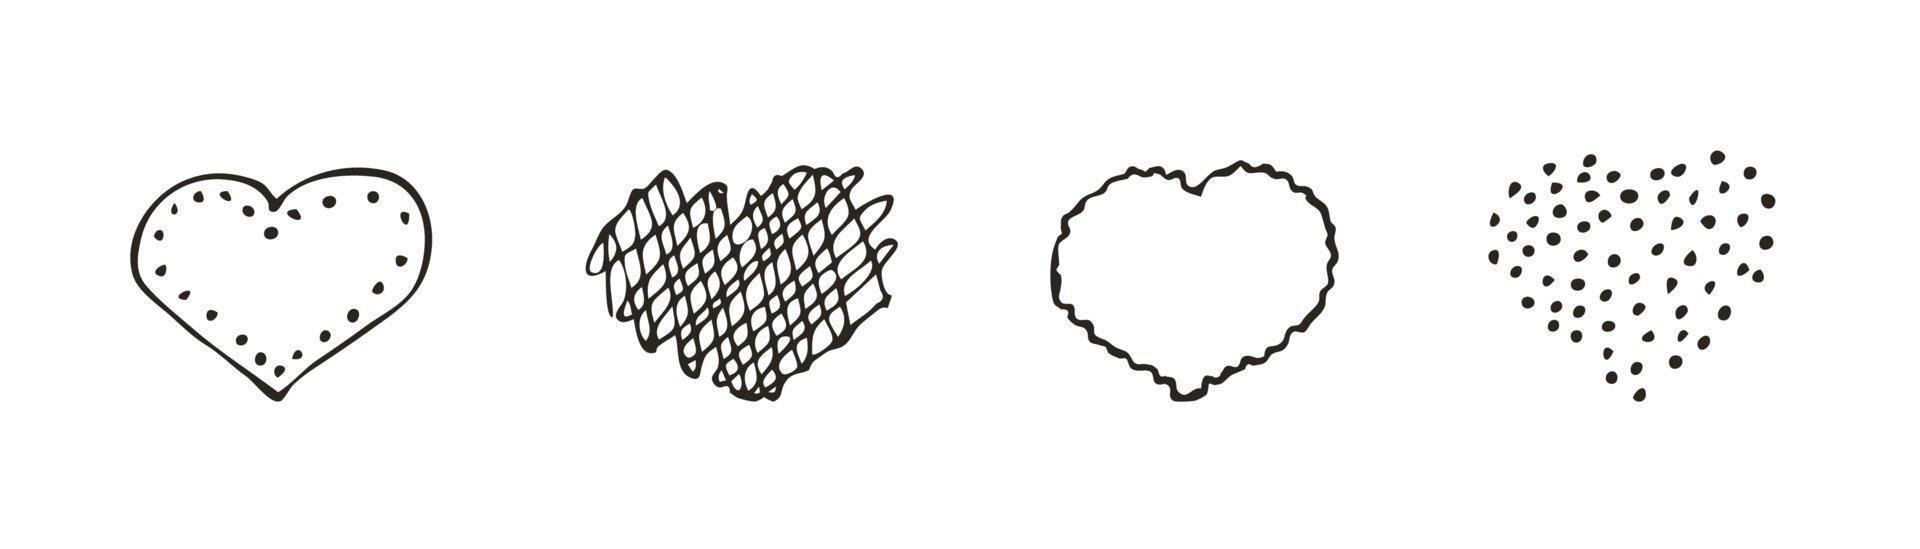 conjunto de icono de corazón de doodle. símbolo de amor. Ilustración gráfica de vector dibujado a mano lindo aislado sobre fondo blanco. signo de estilo de contorno simple. patrón de dibujo de arte